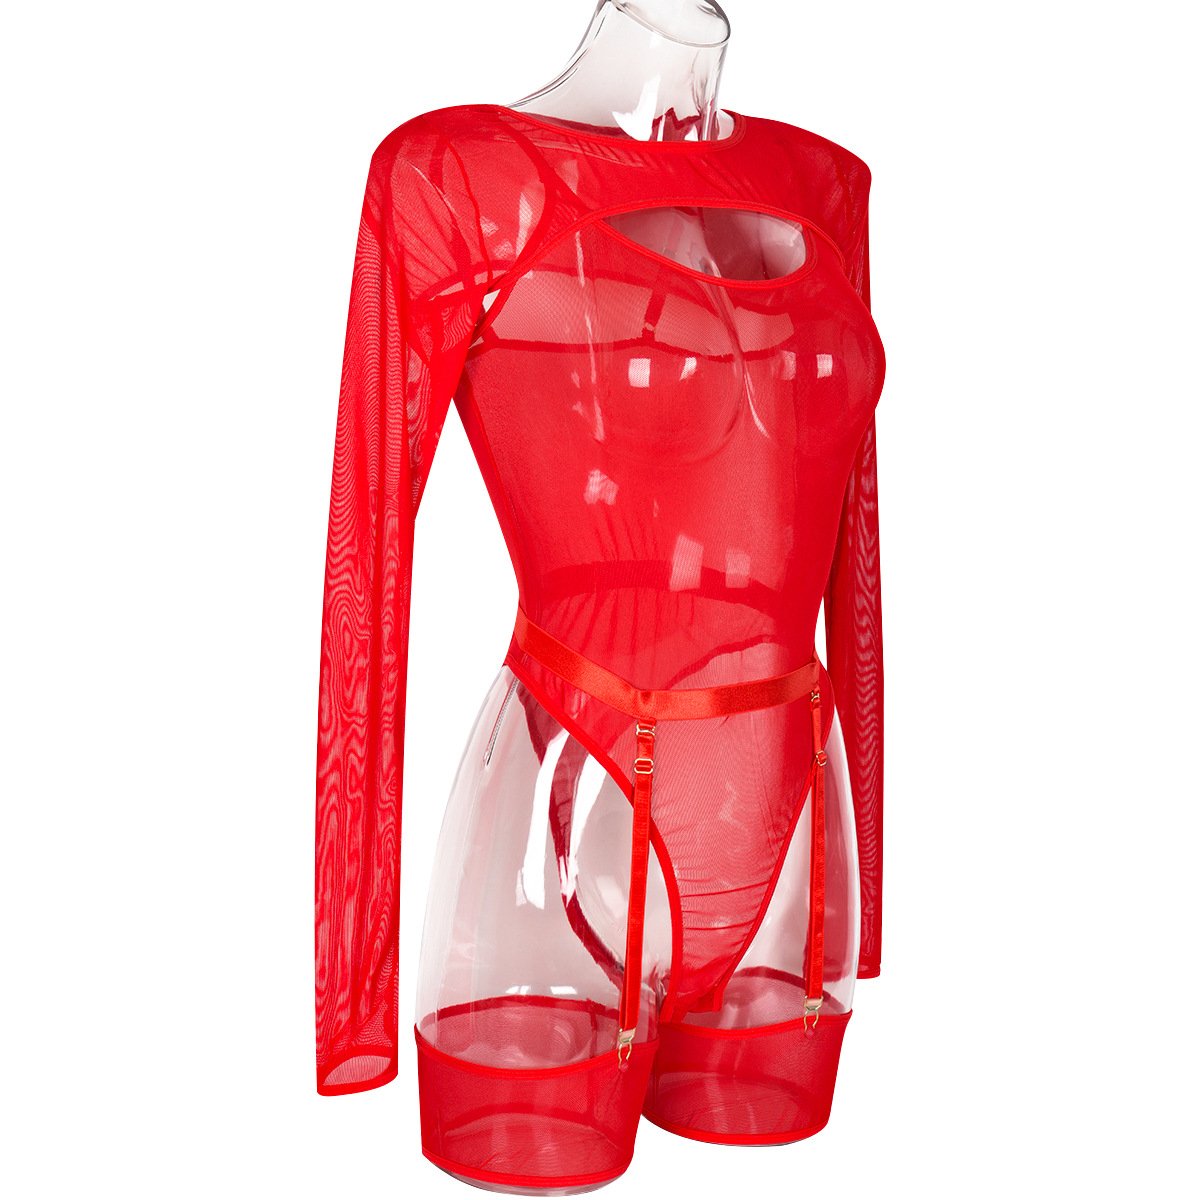 Long sleeve shrug sheer mesh garter bodysuit